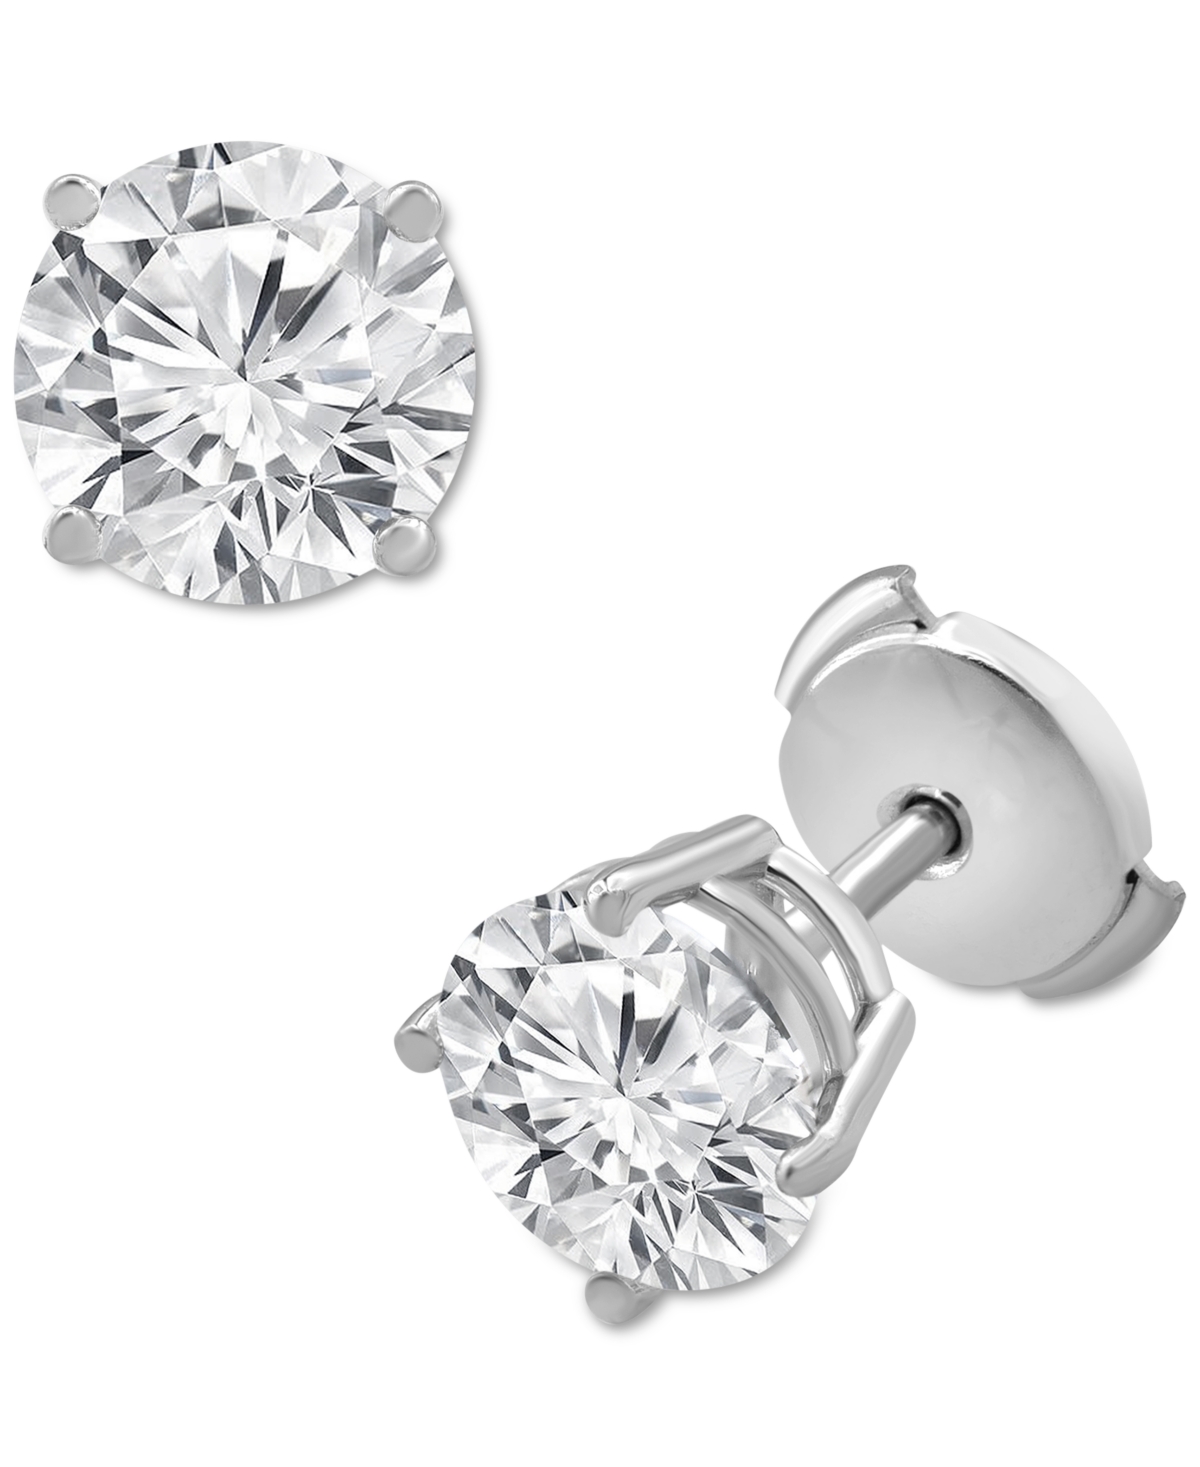 Badgley Mischka Certified Lab Grown Diamond Stud Earrings (3 ct. t.w.) in 14k White Gold